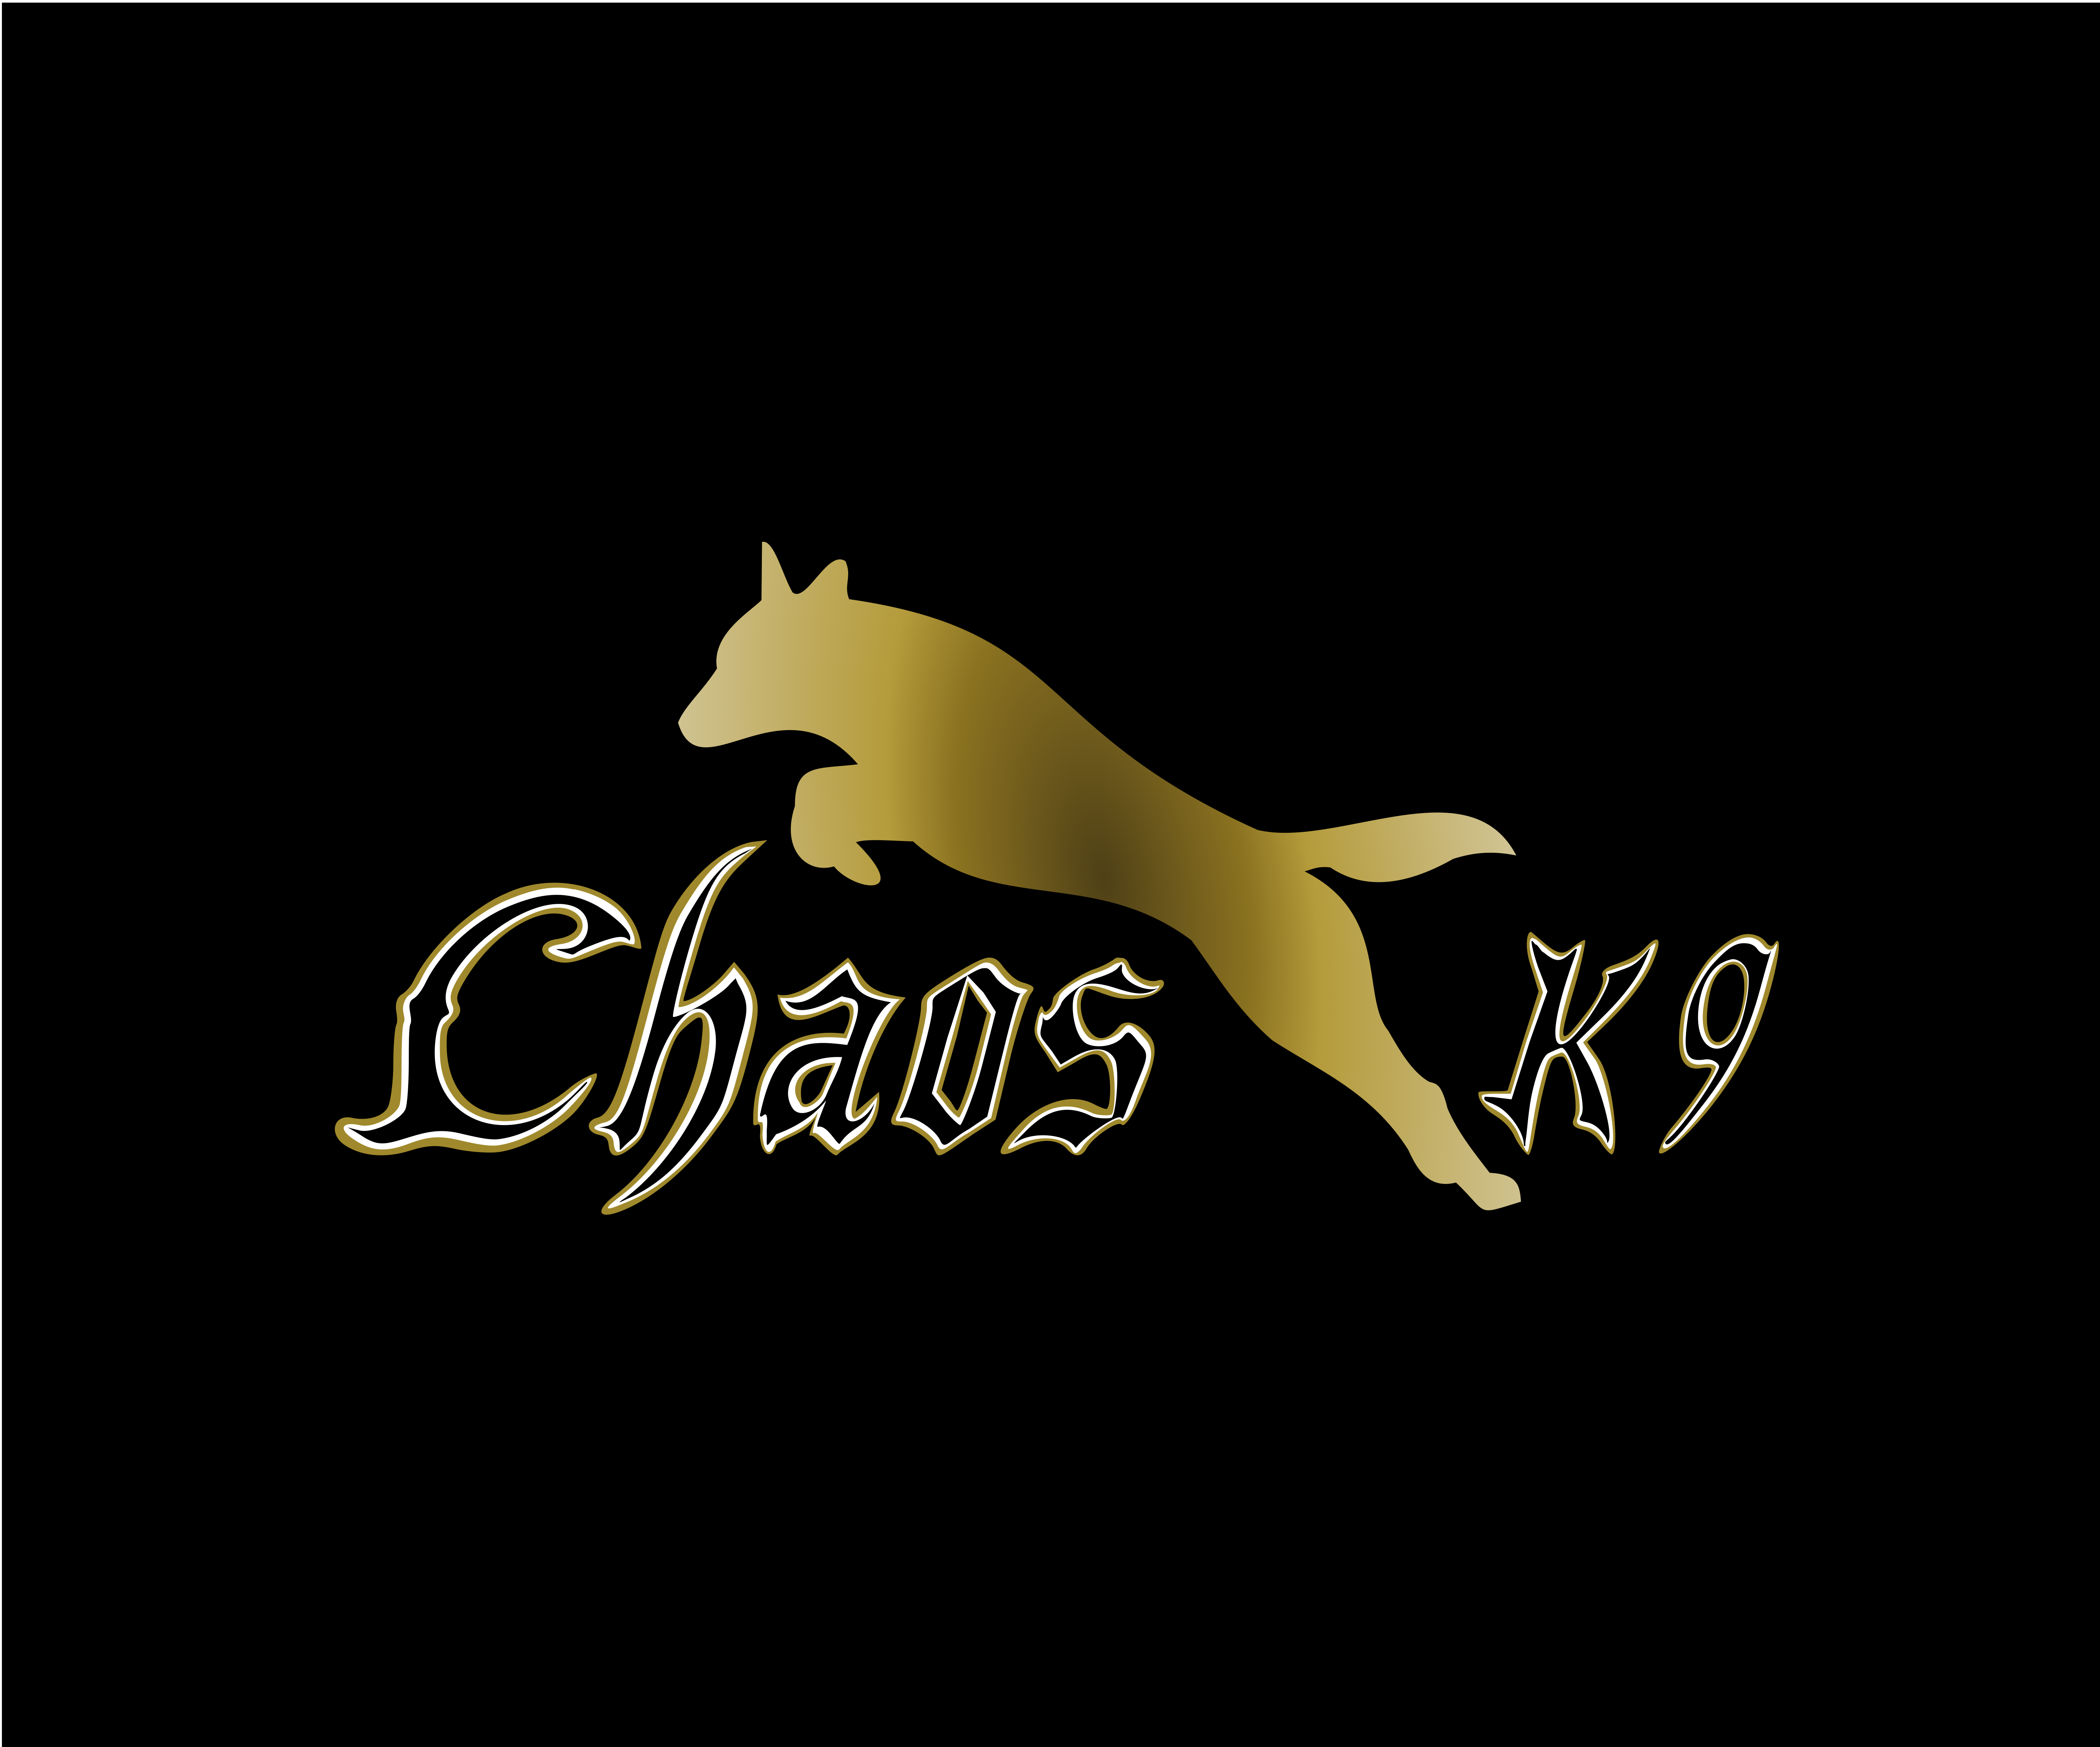 Chaos K9 Logo